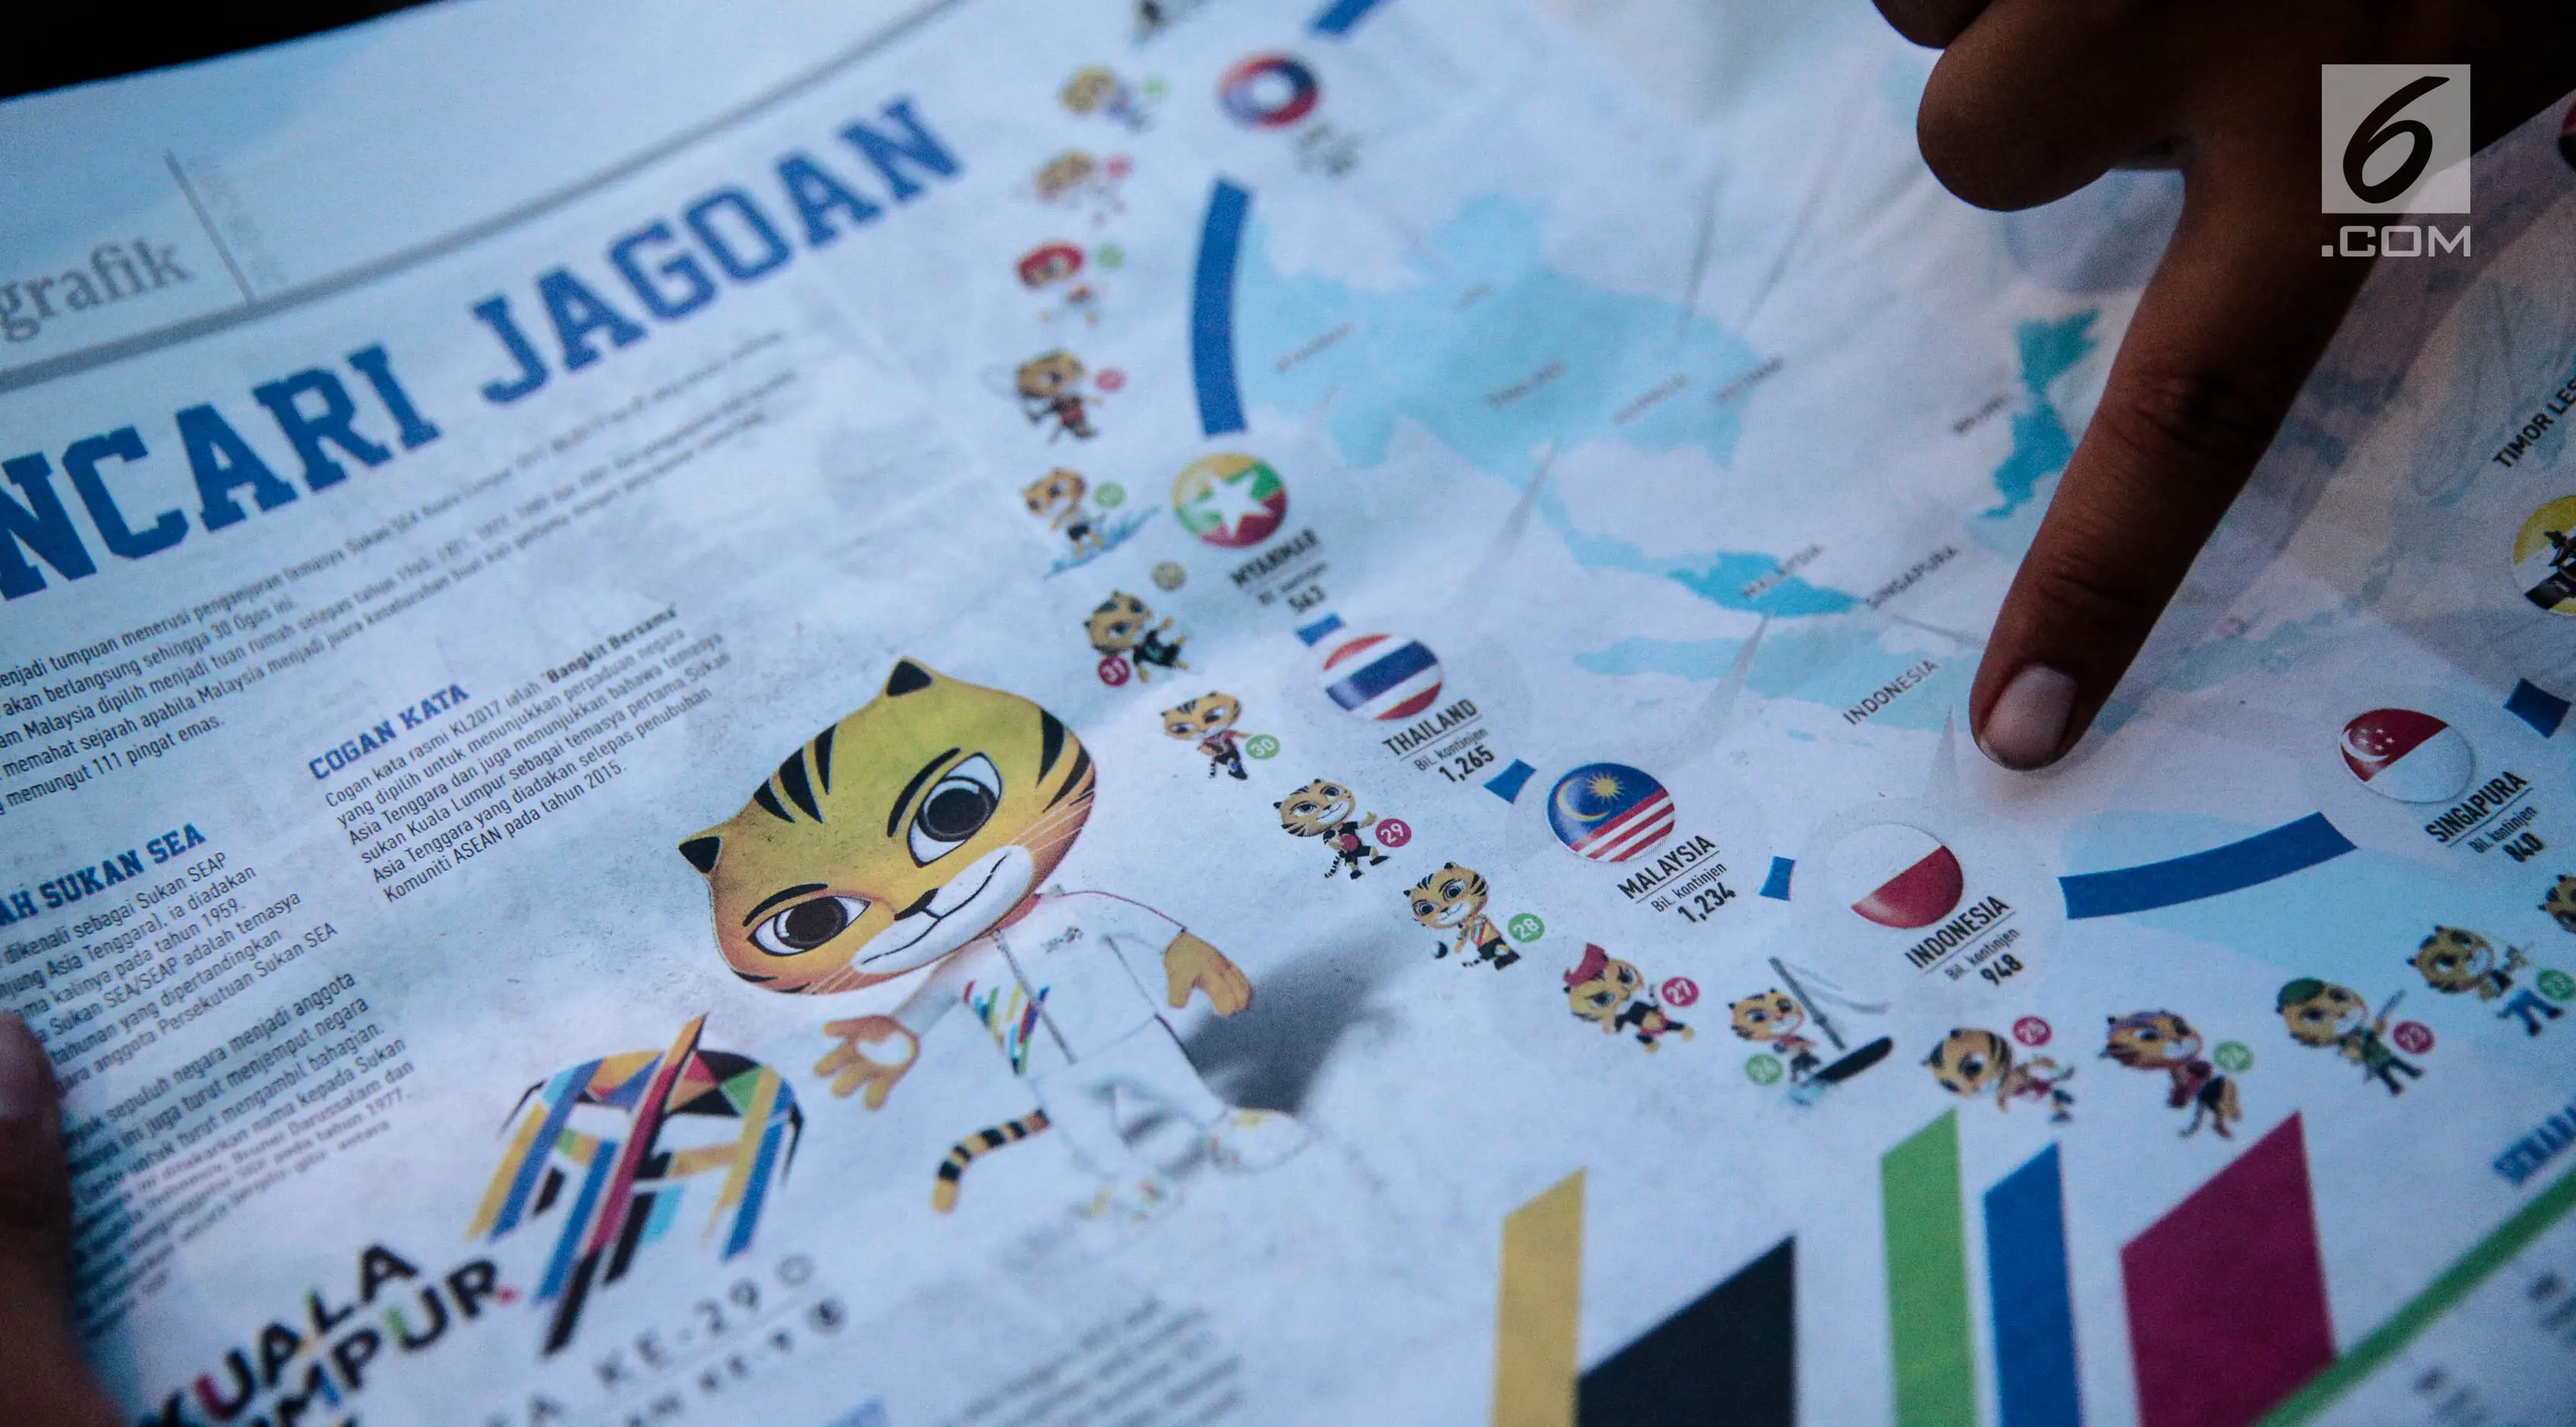 Surat kabar Malaysia, Metro Ahad, menampilkan infografis terkait 11 negara peserta SEA Games 2017 di Kuala Lumpur, Minggu (20/8). Bendera Indonesia pada artikel tersebut tampak terbalik, menyerupai bendera Polandia. (Liputan6.com/Faizal Fanani)